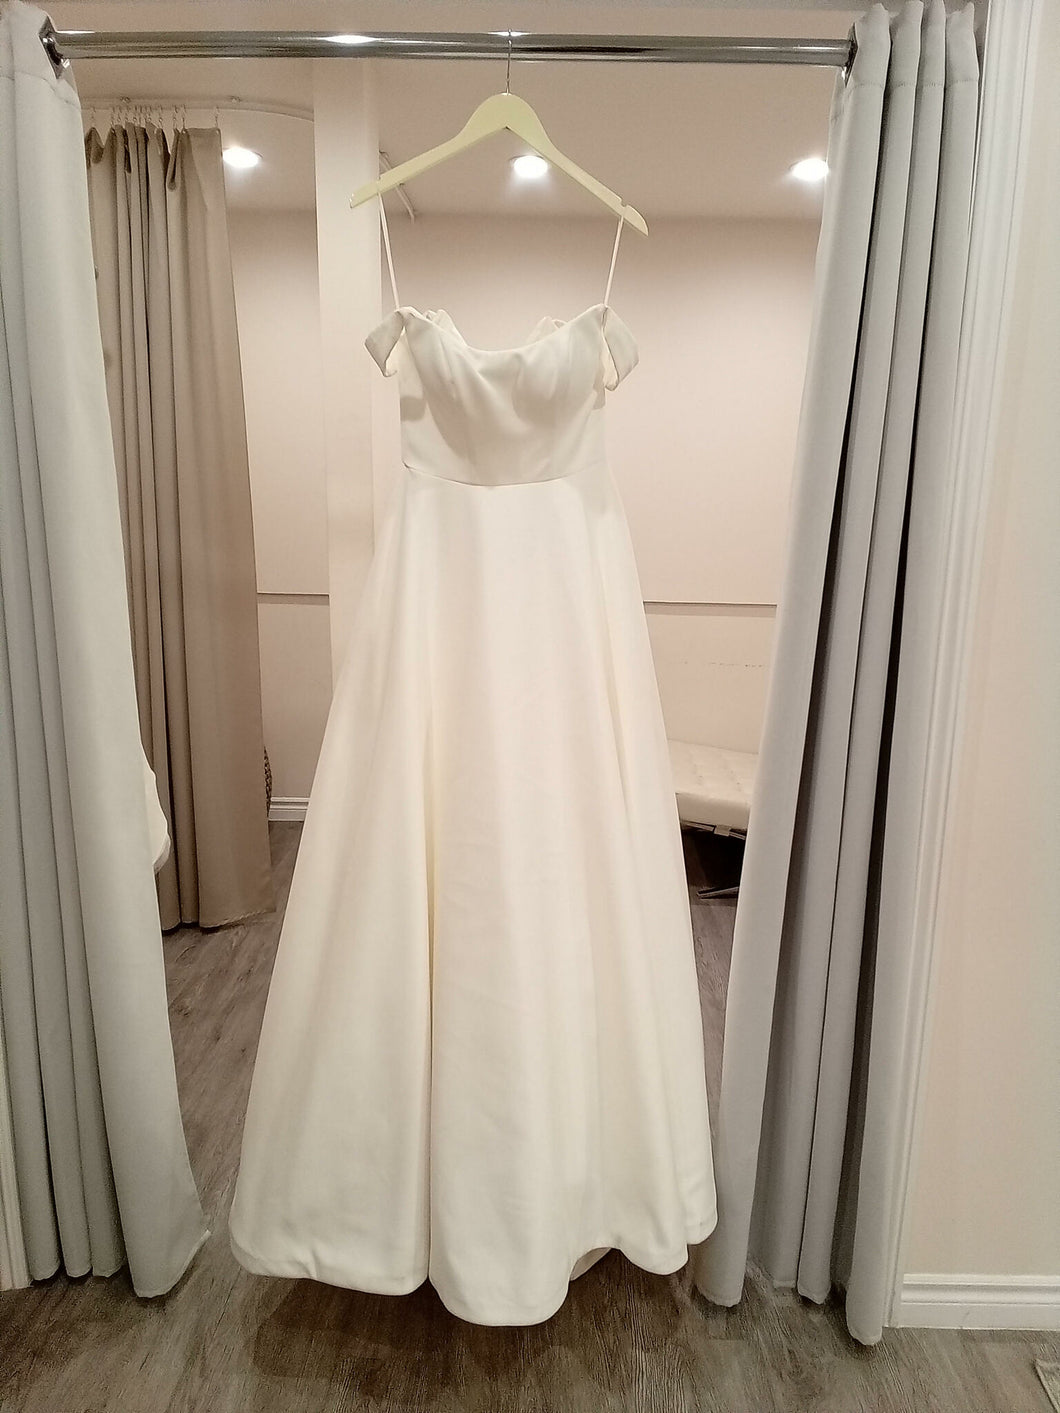 Oxford Street 'PA1219' wedding dress size-10 NEW